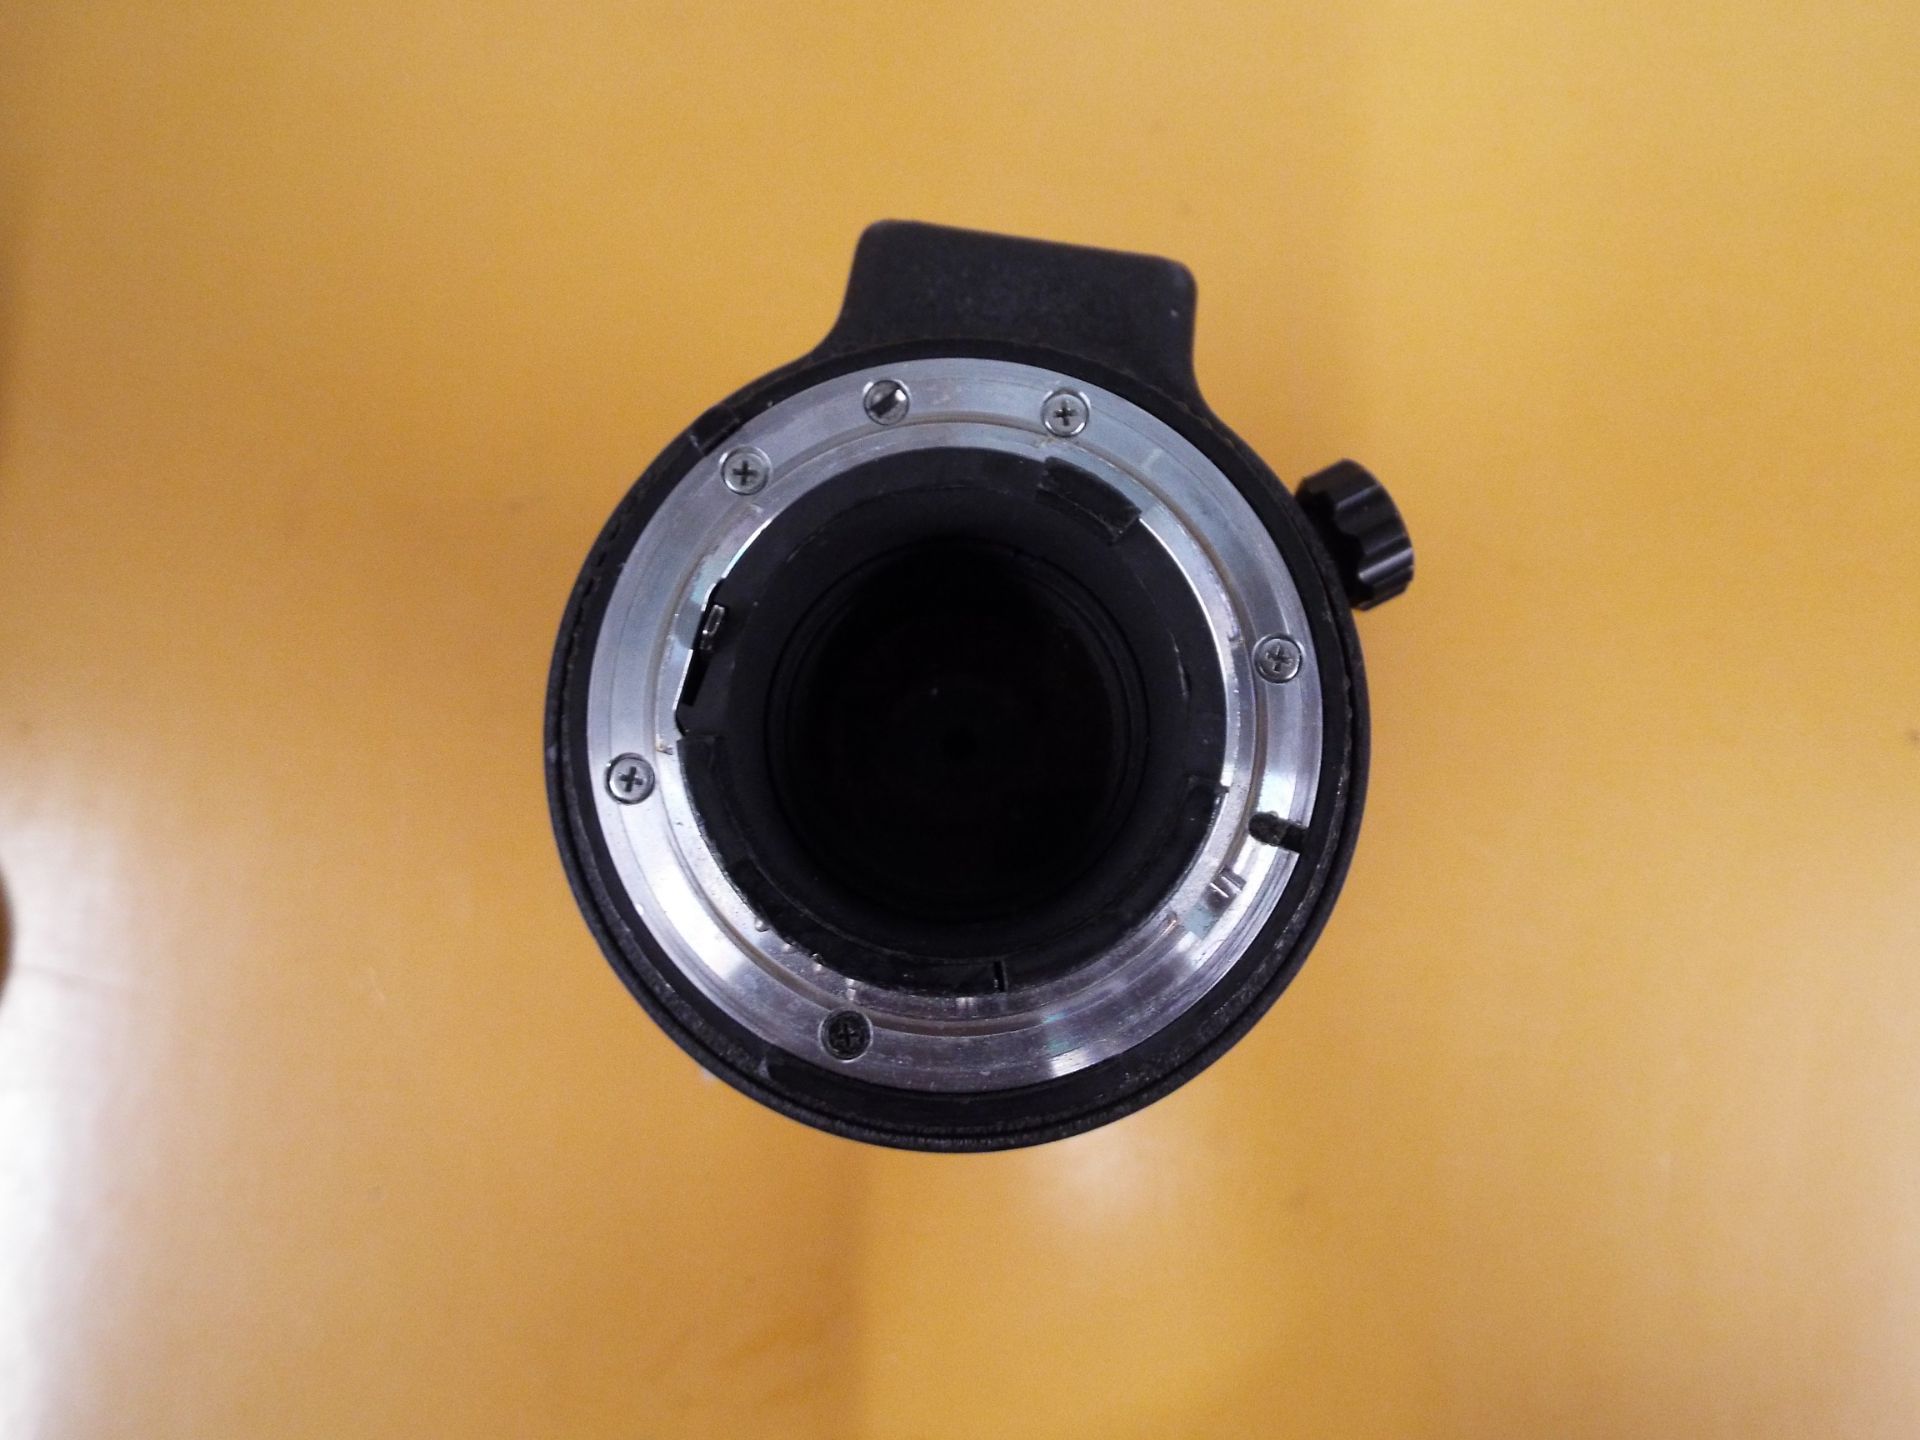 Nikon ED AF Nikkor 80-200mm 1:2.8 D Lense with Leather Carry Case - Image 6 of 7